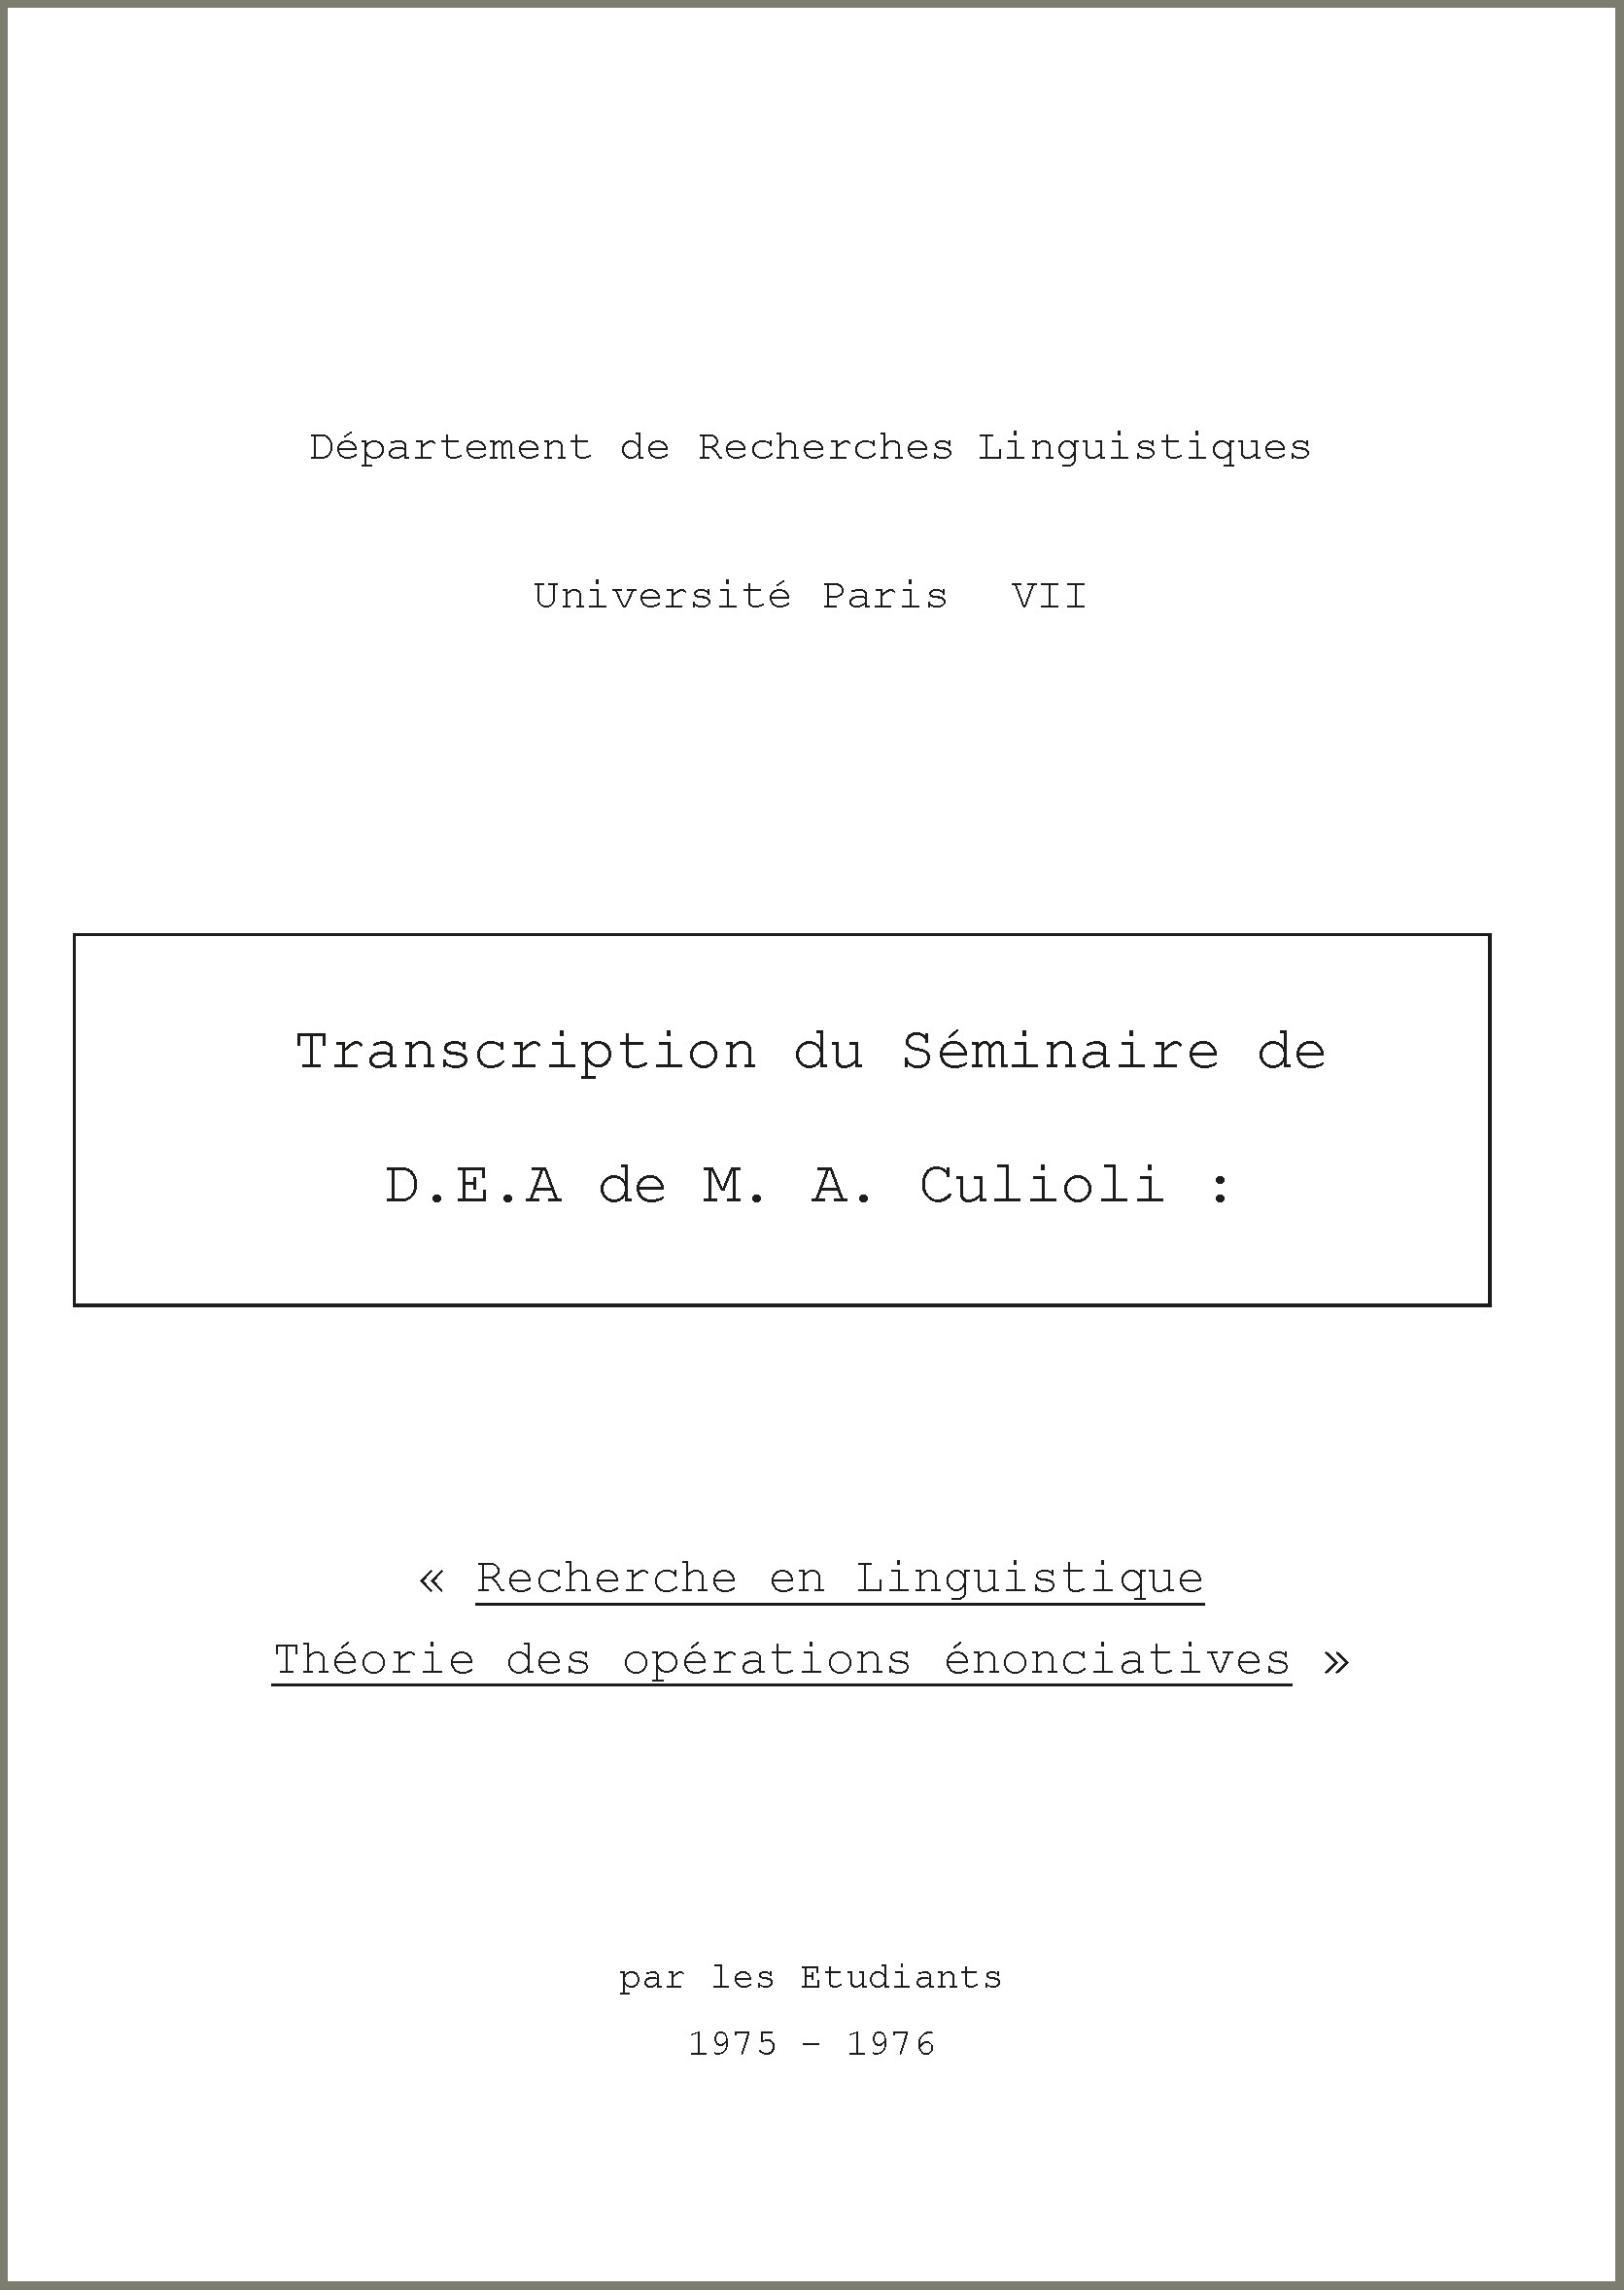 Transcription du séminaire de D.E.A de M. A. Culioli